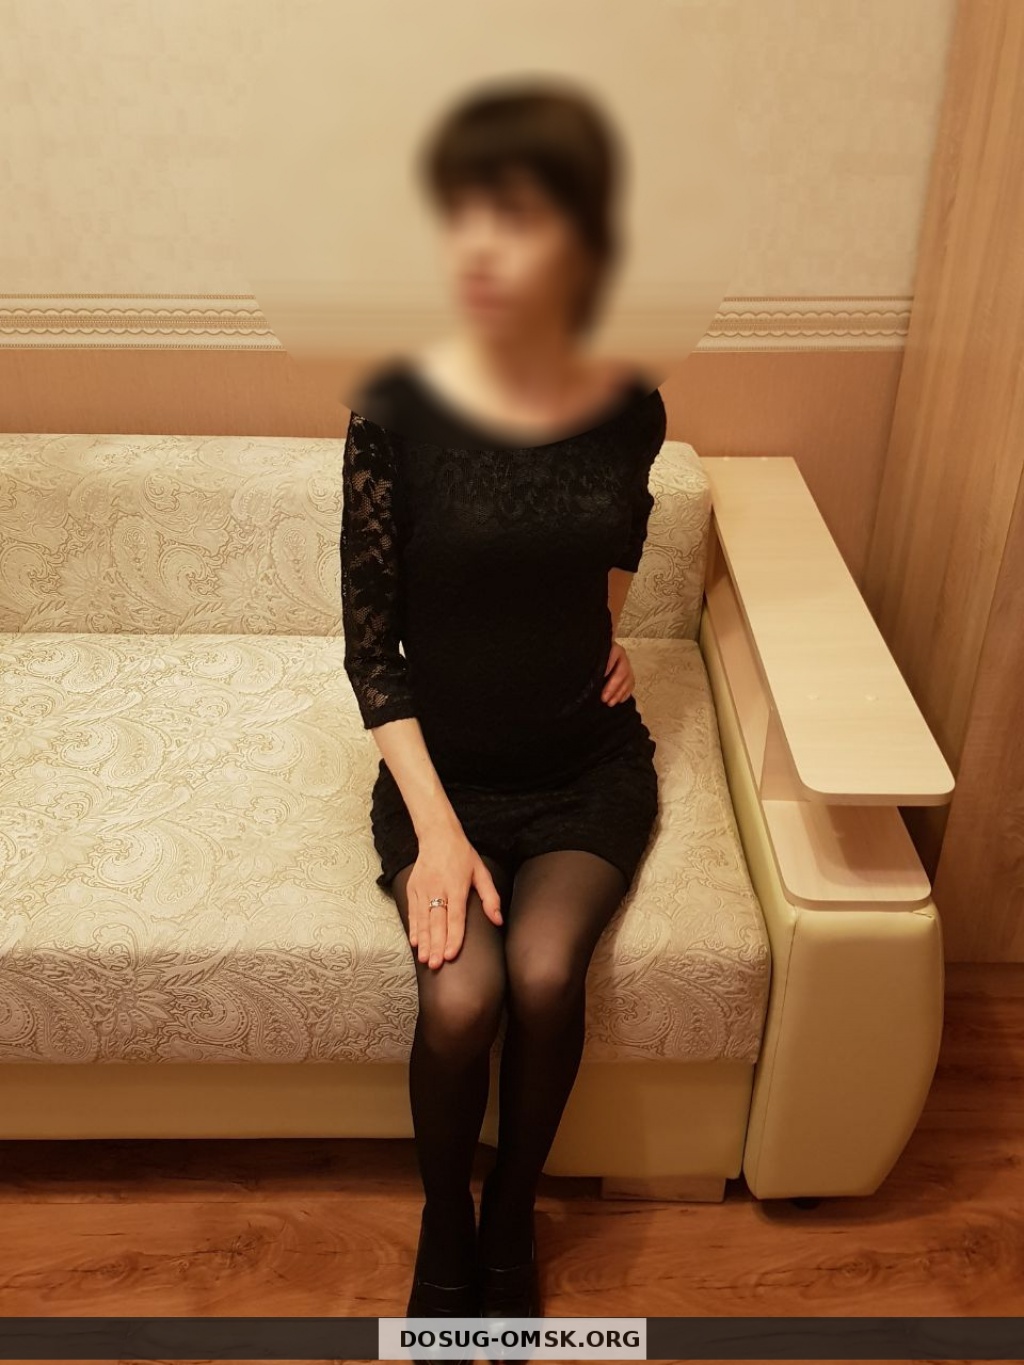 Анастасия: проститутки индивидуалки в Омске